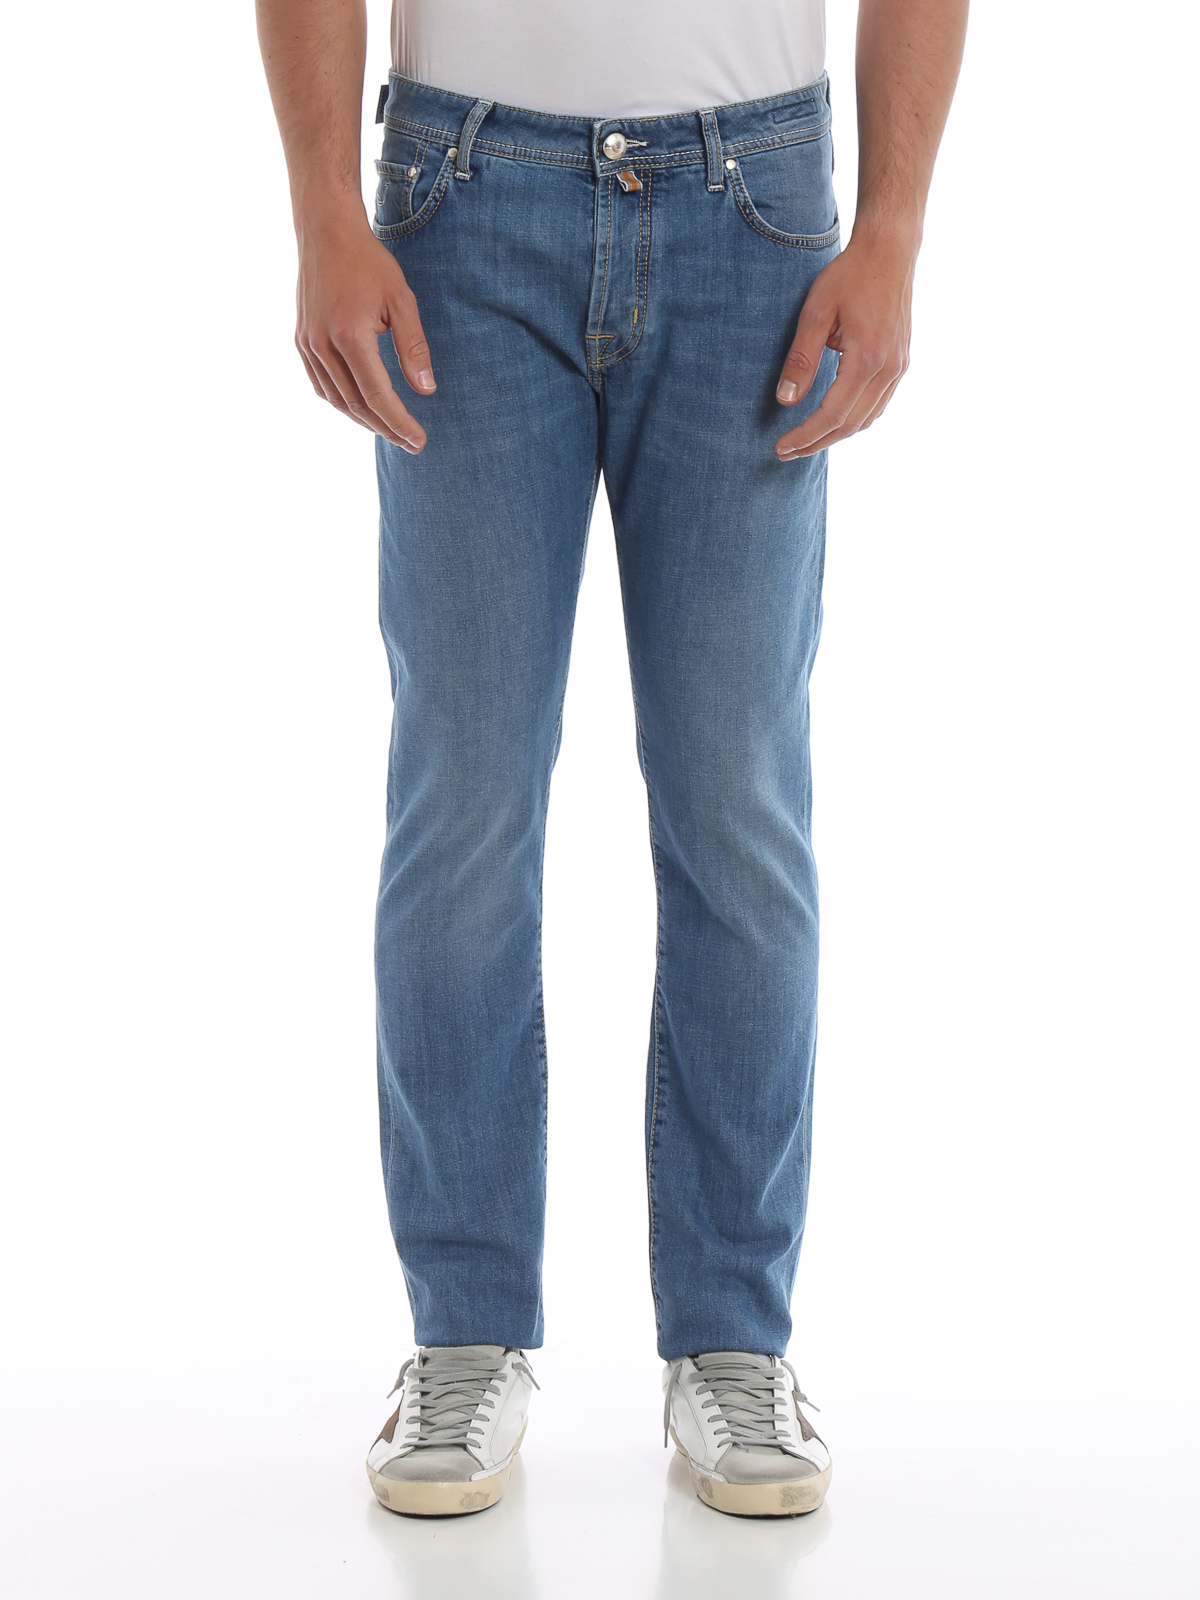 Straight leg jeans Jacob Cohen - Style 688 stretch cotton denim jeans ...